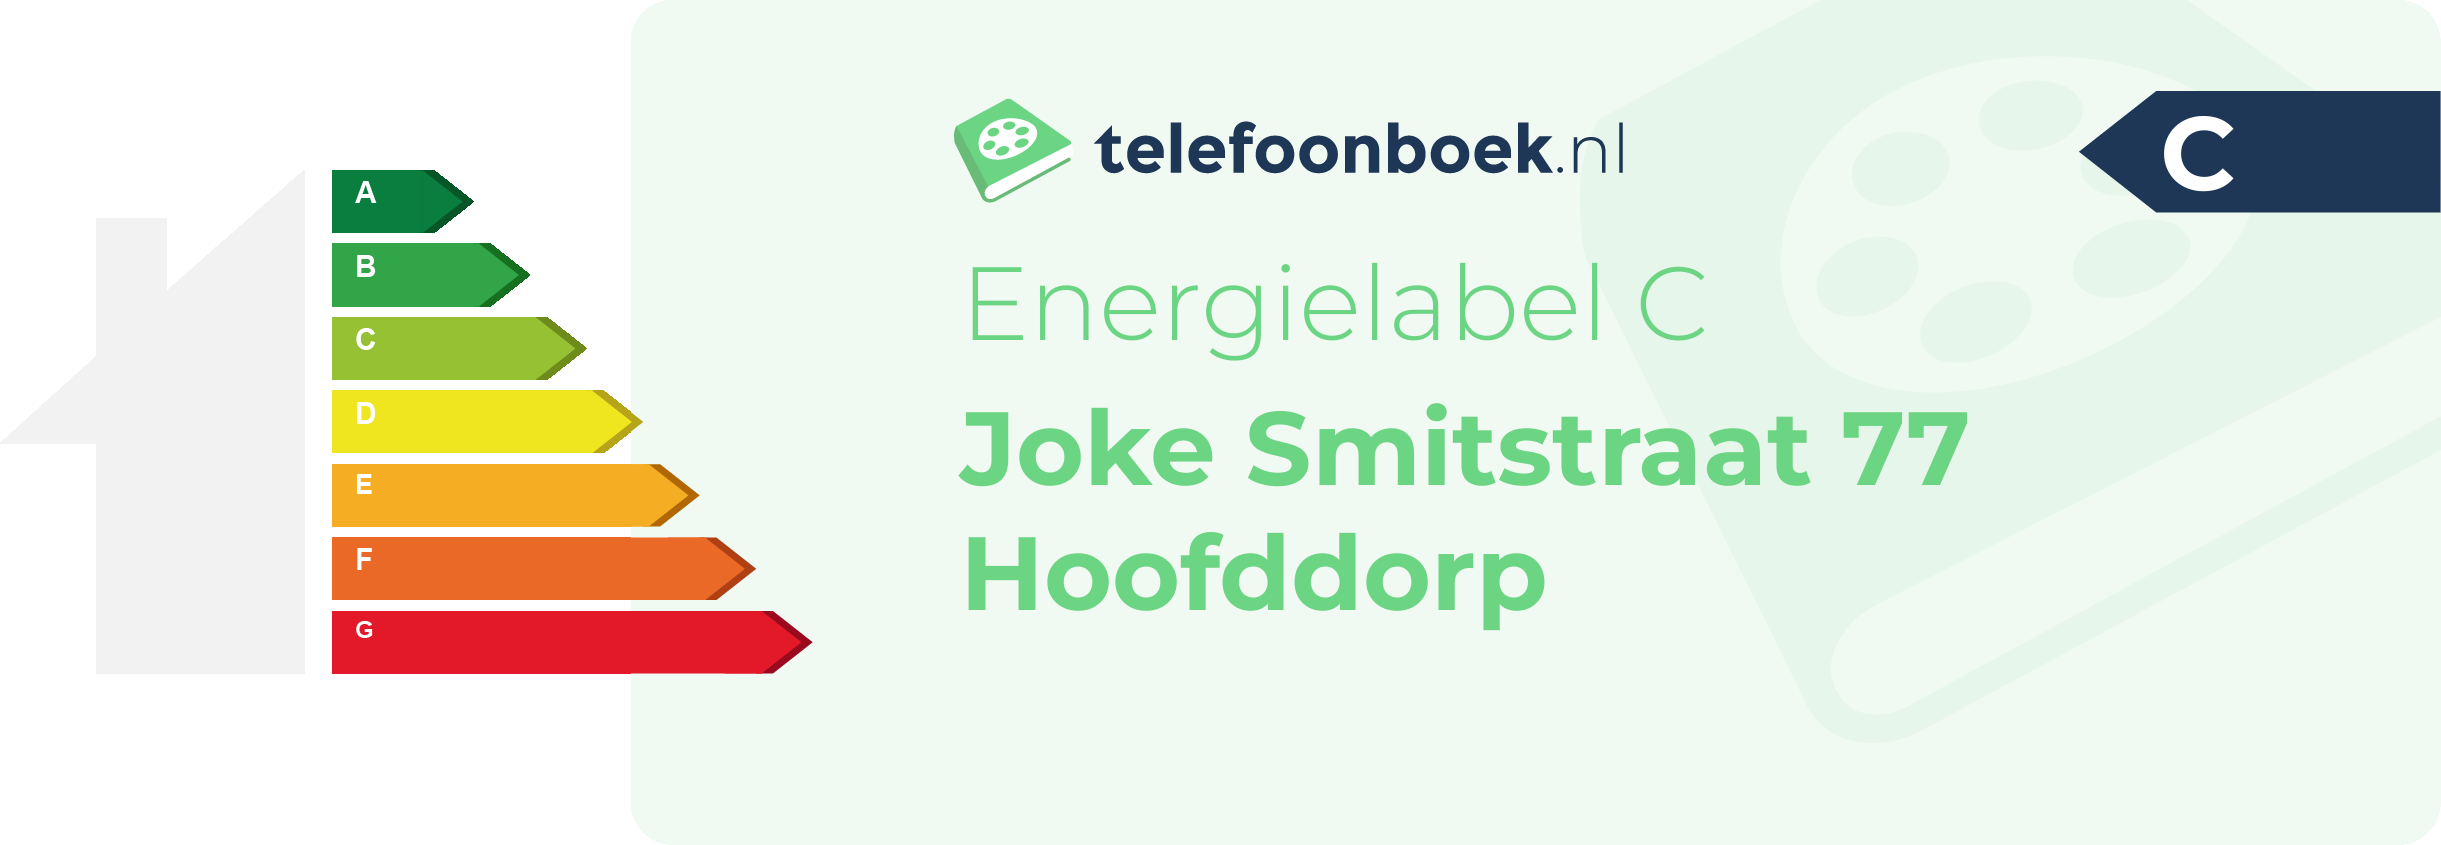 Energielabel Joke Smitstraat 77 Hoofddorp